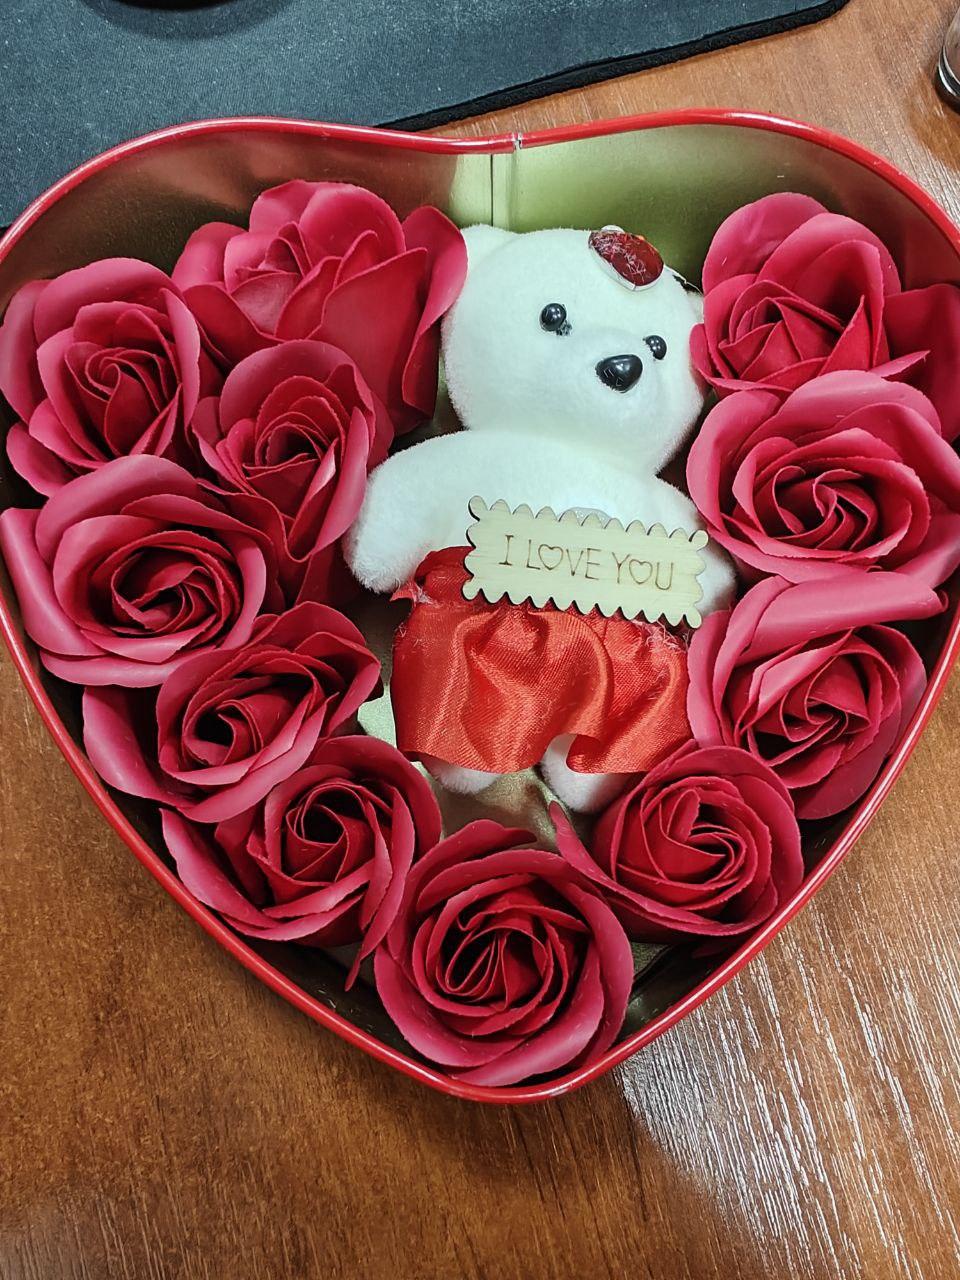 Подарунок колегам на набір коробка у формі серця з мильними квітками 11 троянд 1 ведмедик